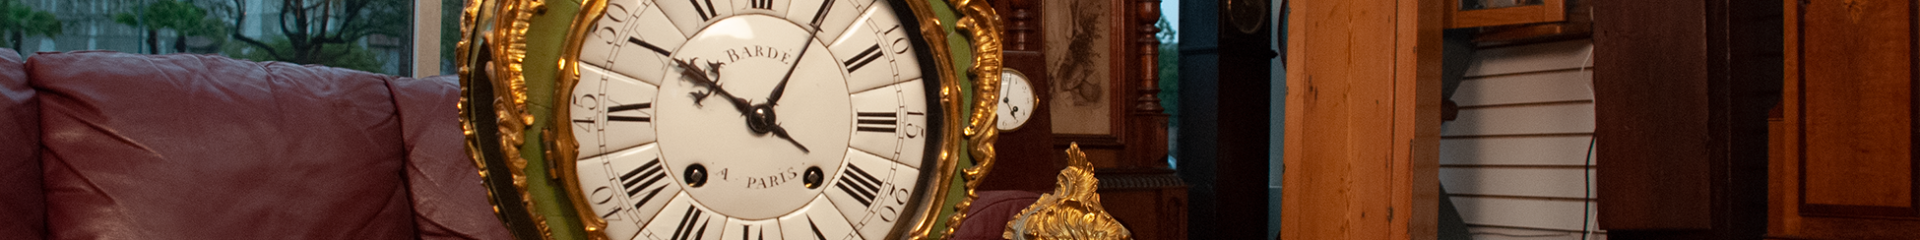 jp clock shop - antique clock repairs